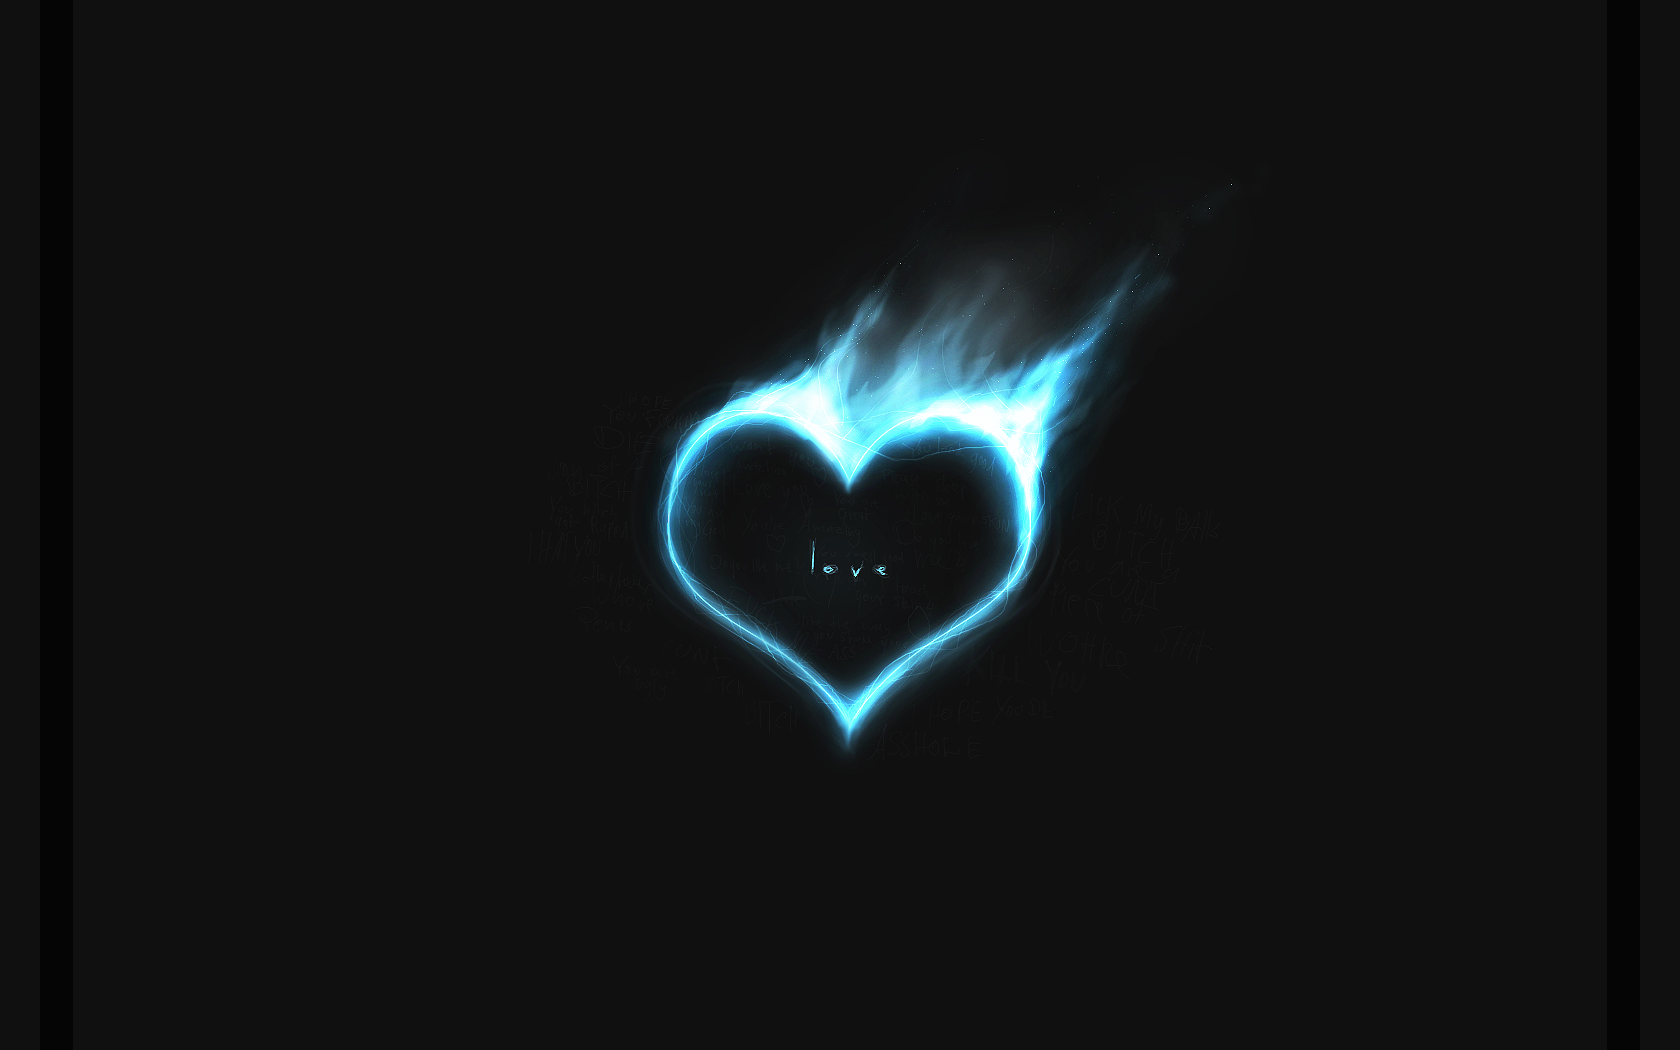 Blue heart in fire wallpaper. Blue heart in fire